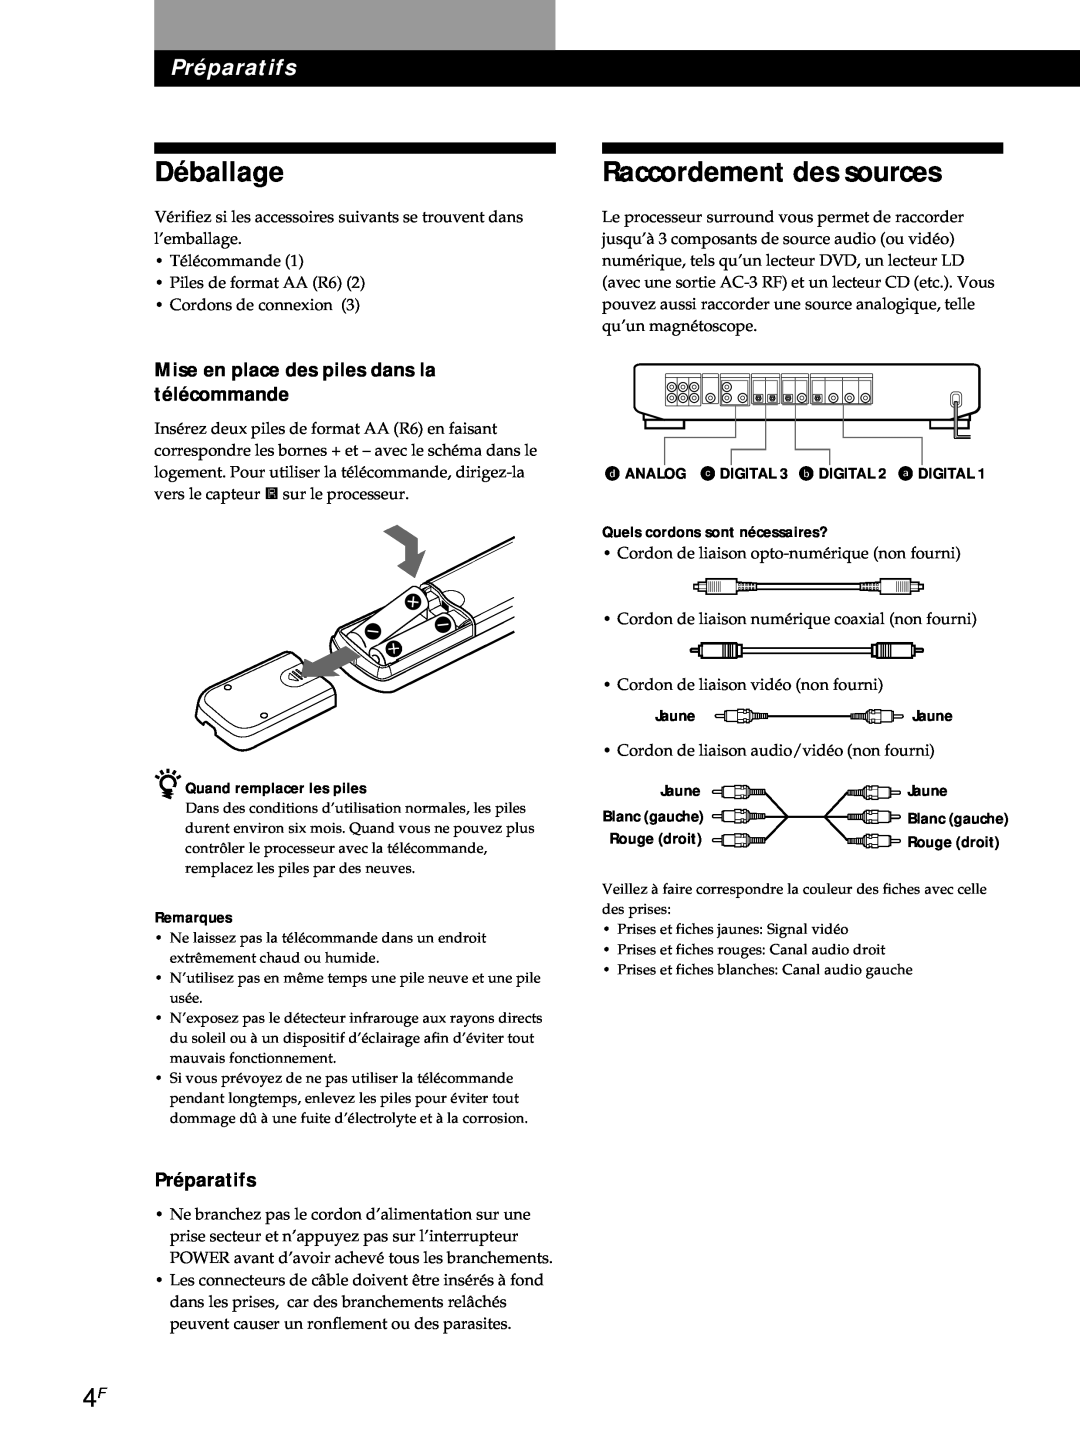 Sony SDP-E800 Déballage, Raccordement des sources, Préparatifs, Mise en place des piles dans la télécommande 